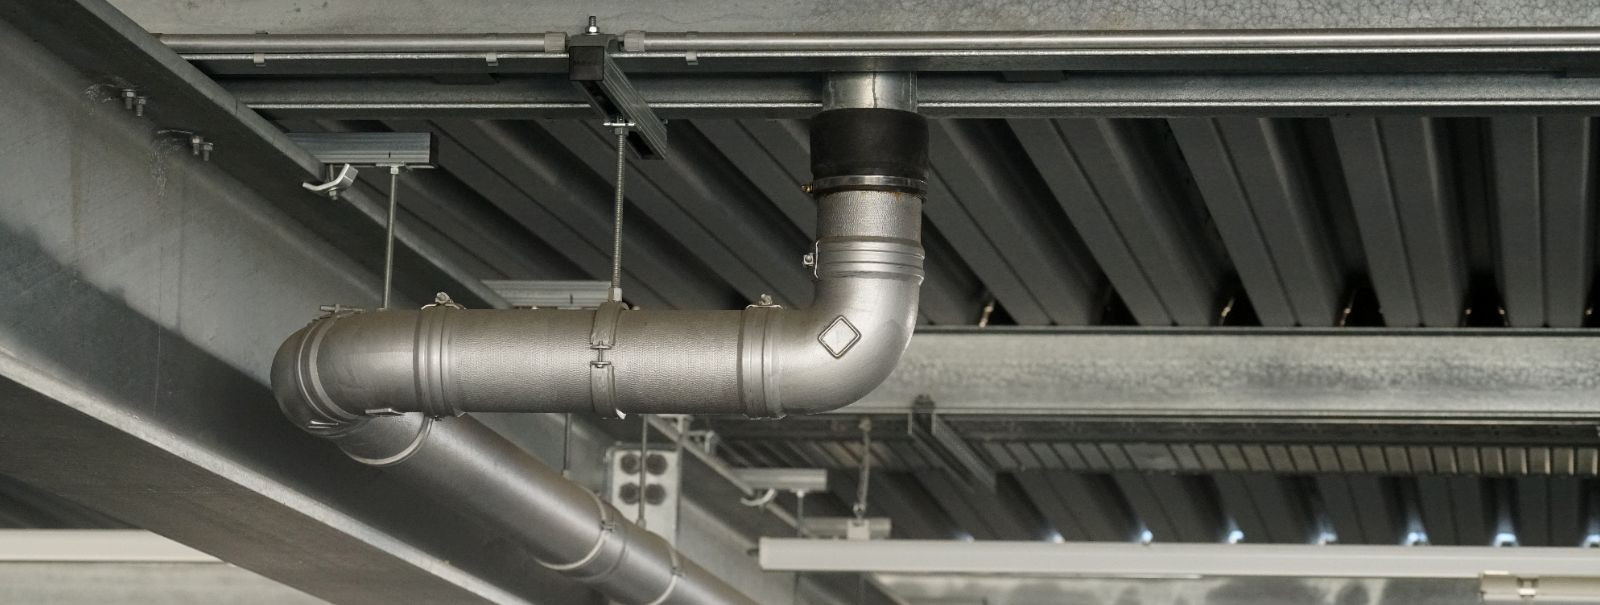 Klimatek OÜ põhitegevuseks on ventilatsioonisüsteemide puhastus ja ventilatsiooni ja kliimaseadmete paigaldus- ning parandustööd. Ettevõtte klientideks on Eesti